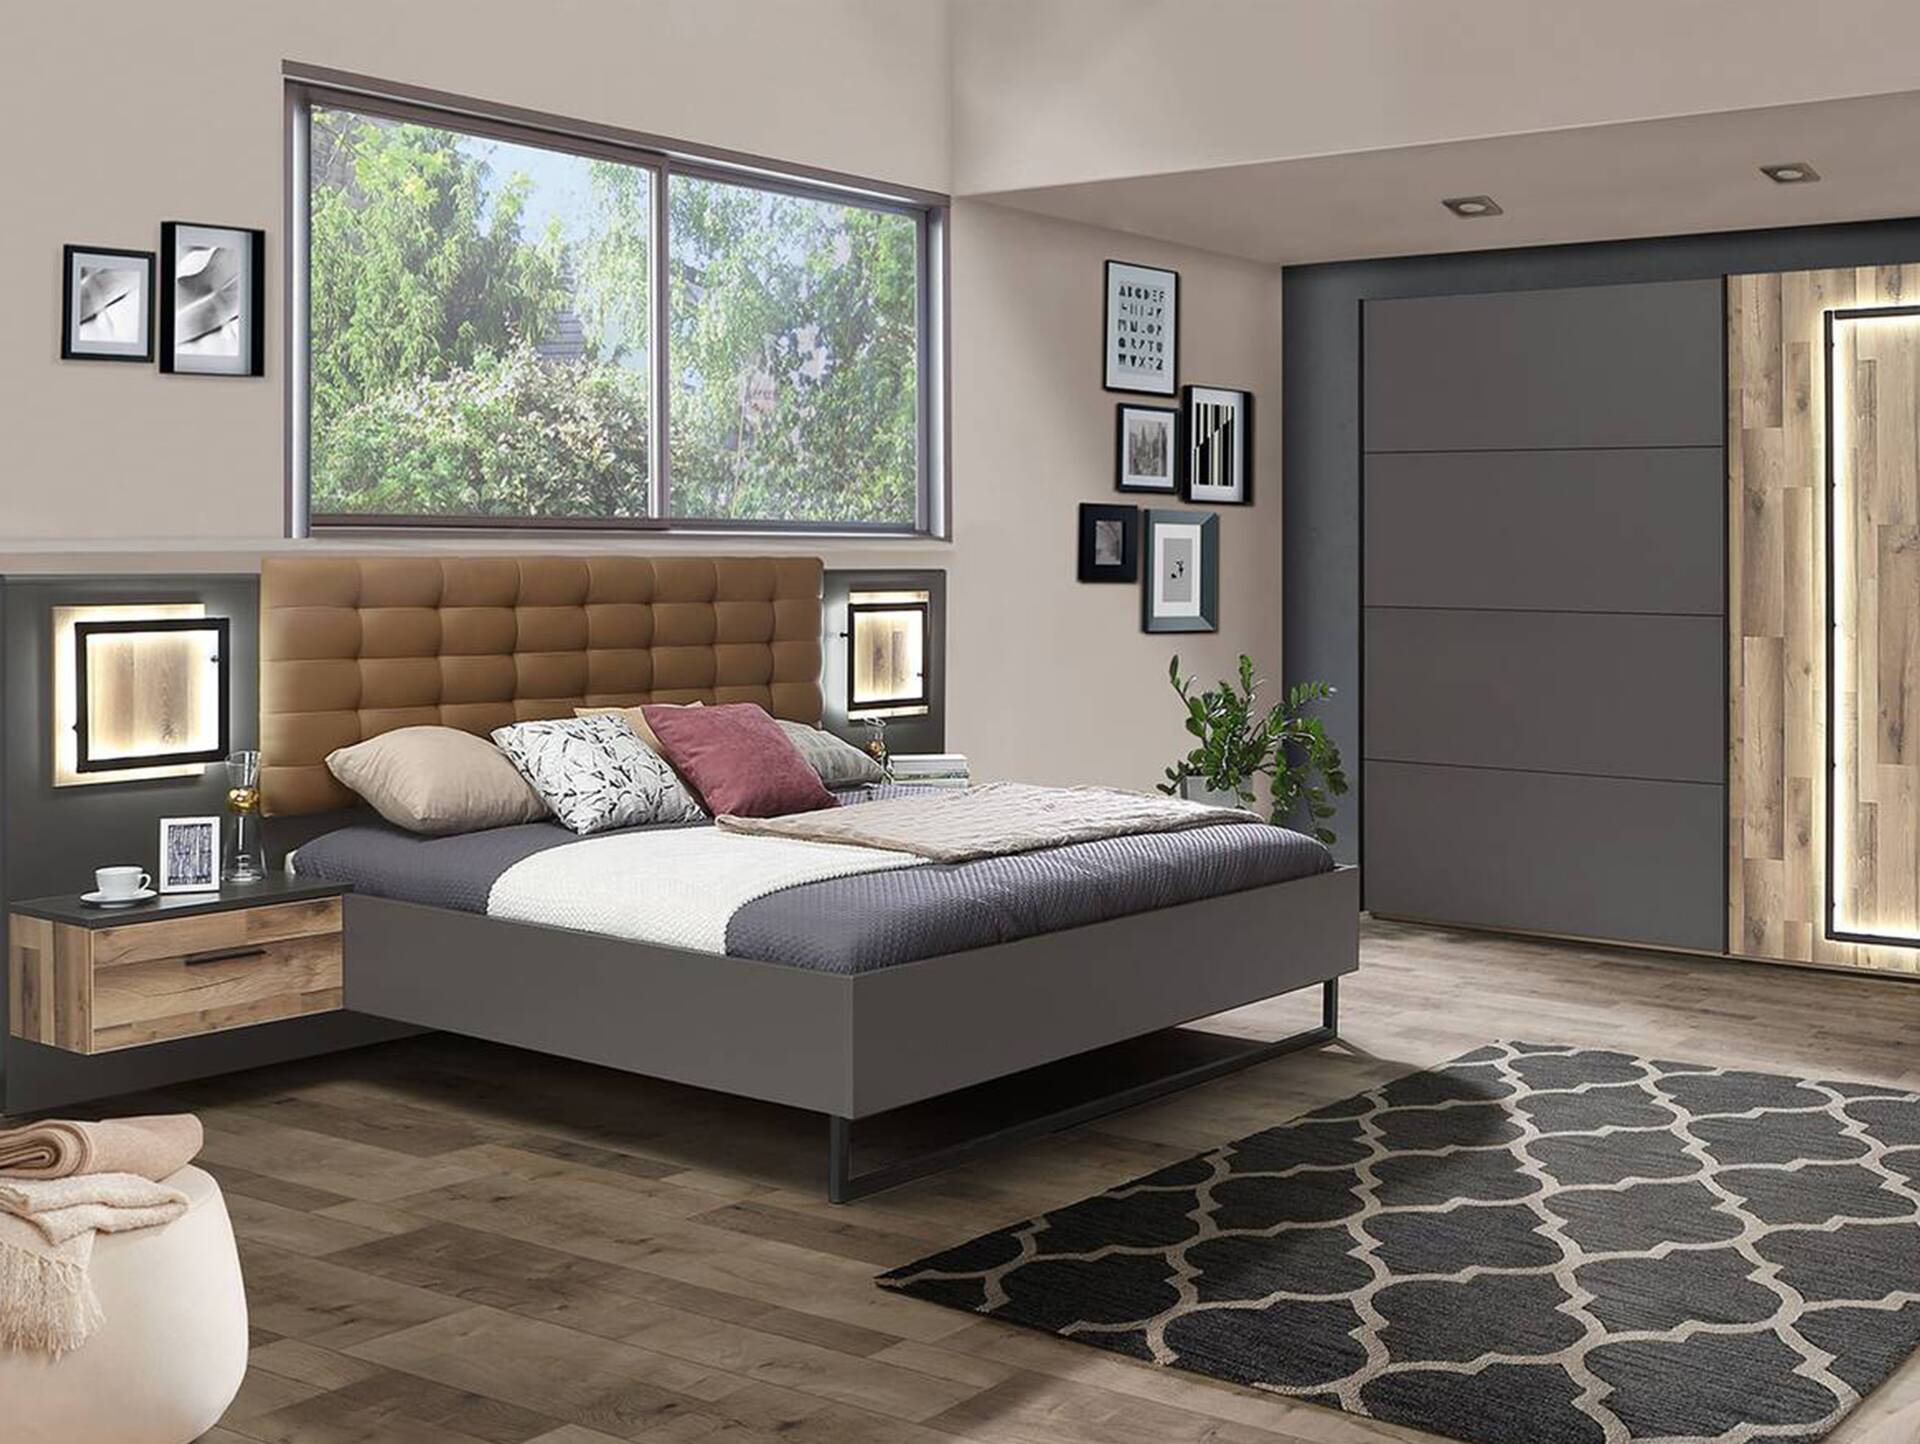 SESTRA Komplett-Schlafzimmer, Material Dekorspanplatte, stabeichefarbig/grau 